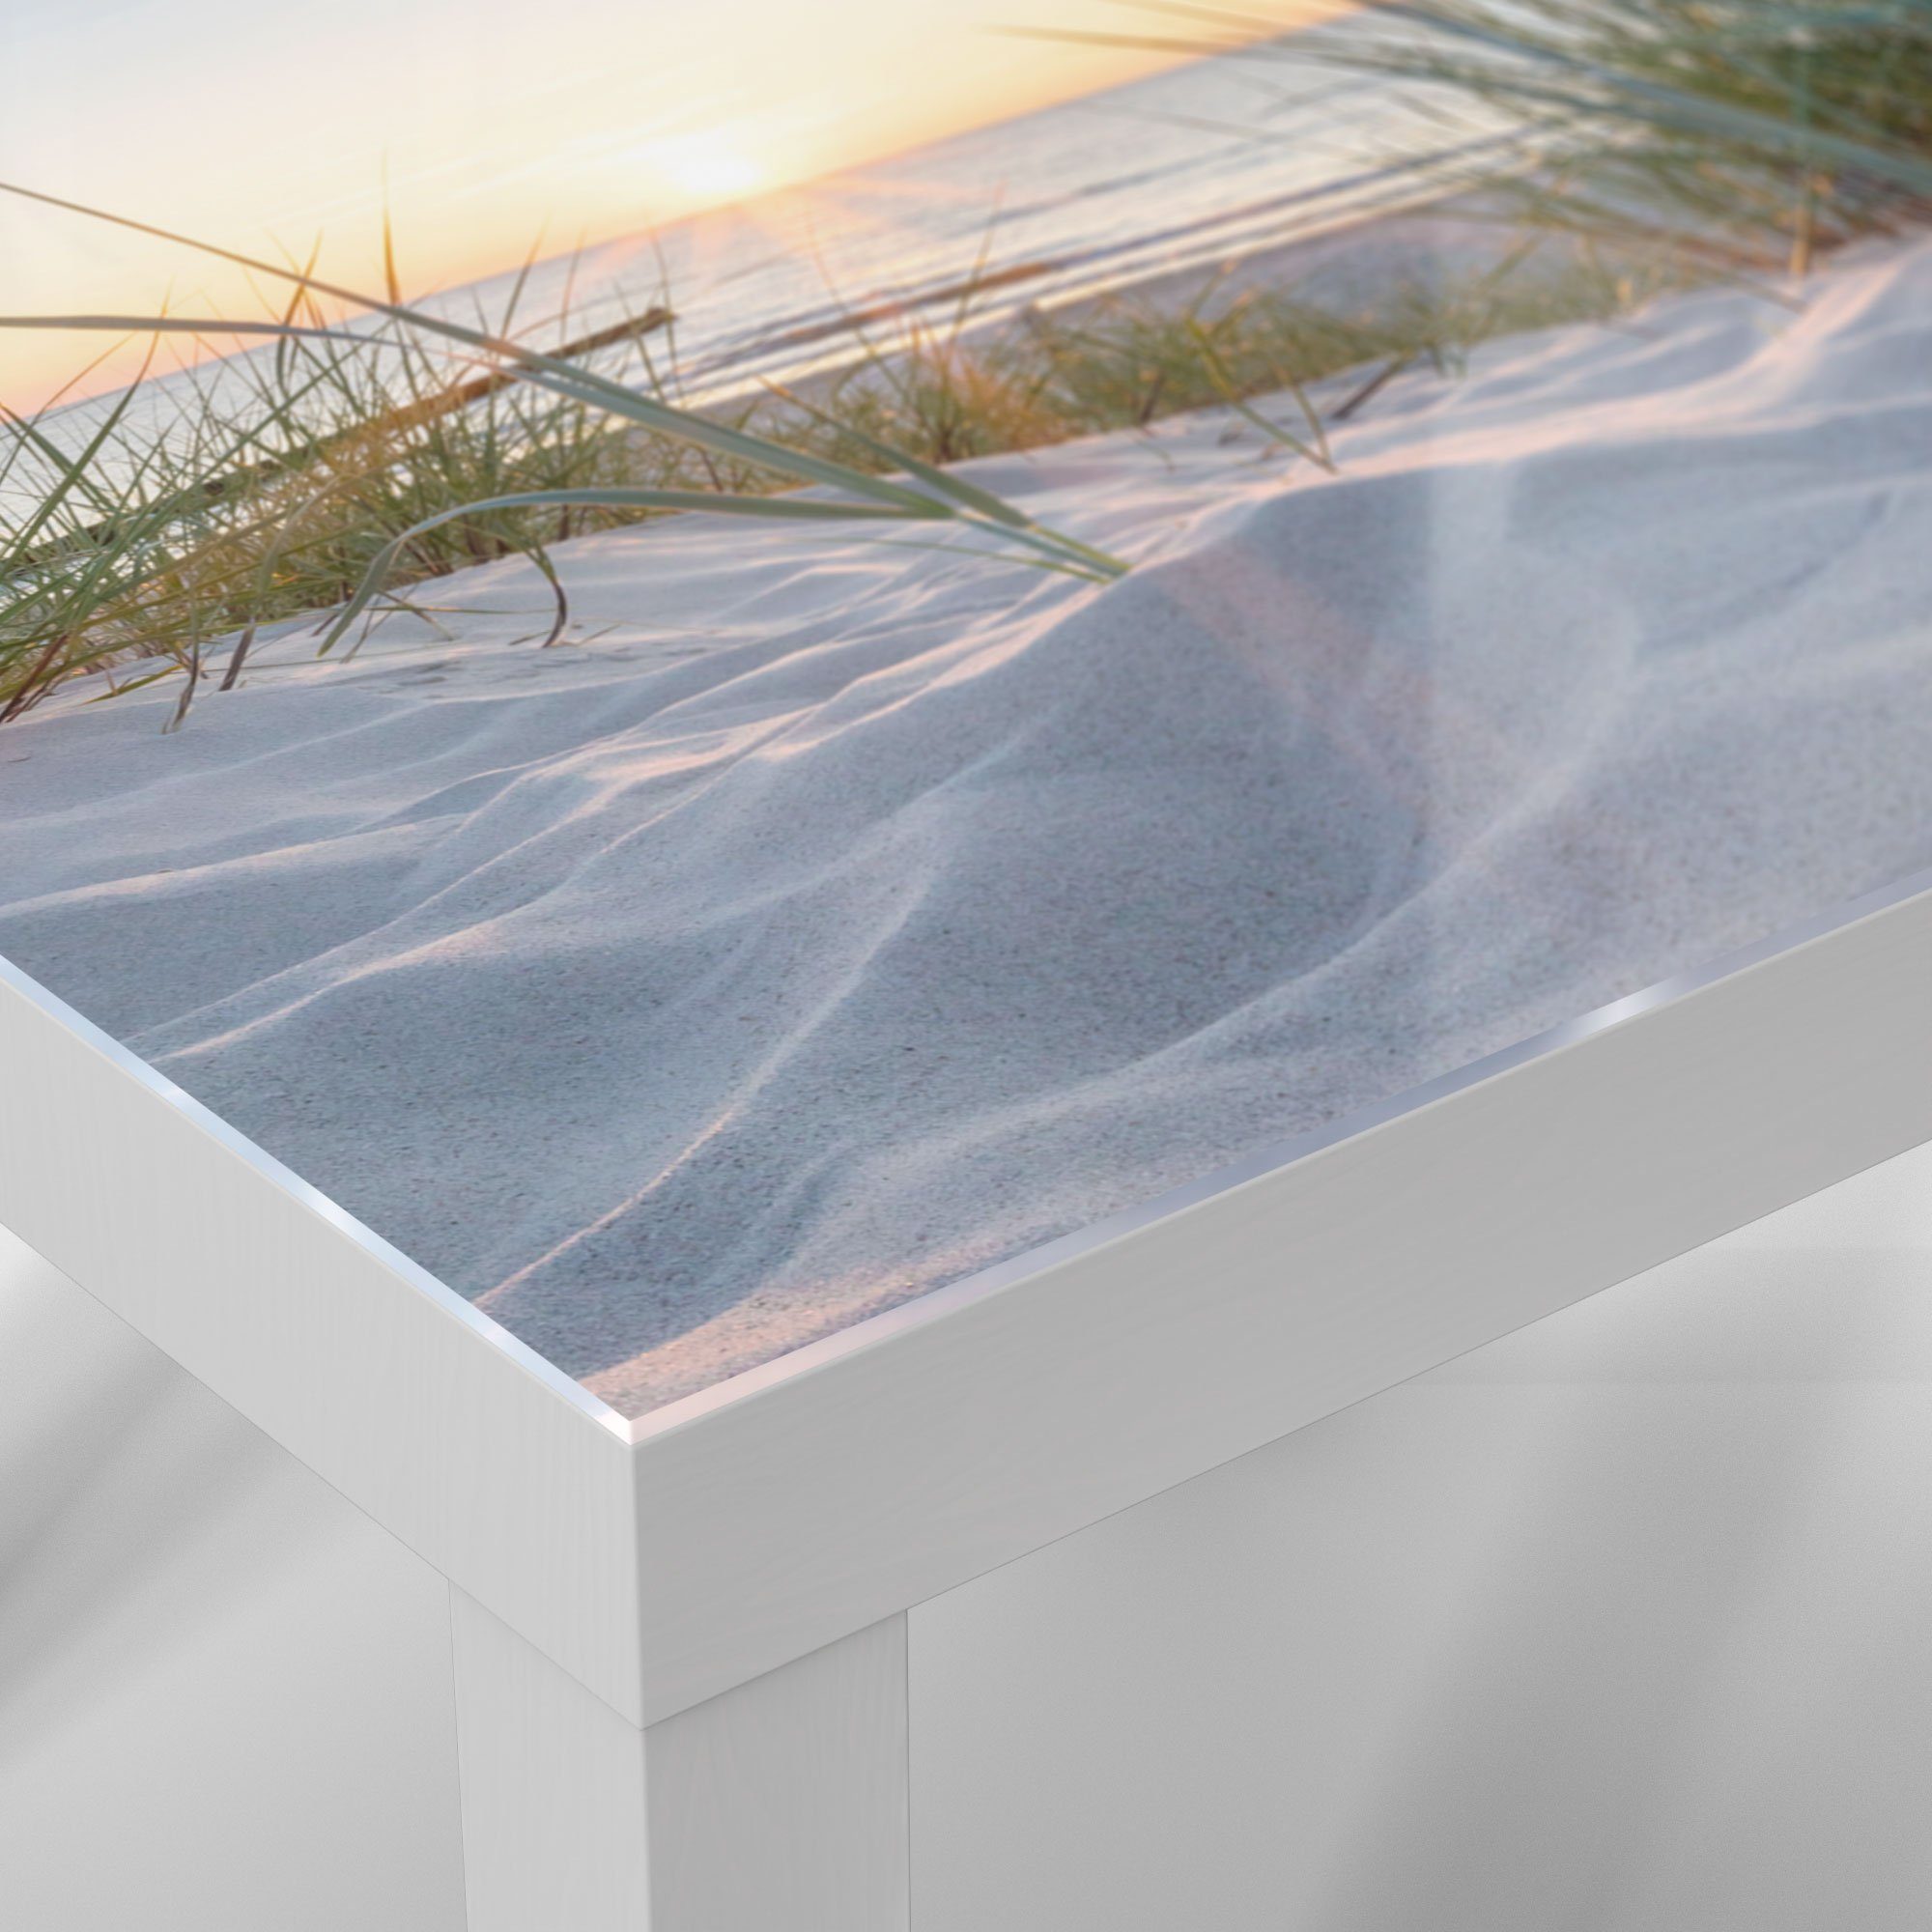 Couchtisch 'Ostsee Sonnenuntergang', DEQORI Weiß Glastisch Beistelltisch Glas modern